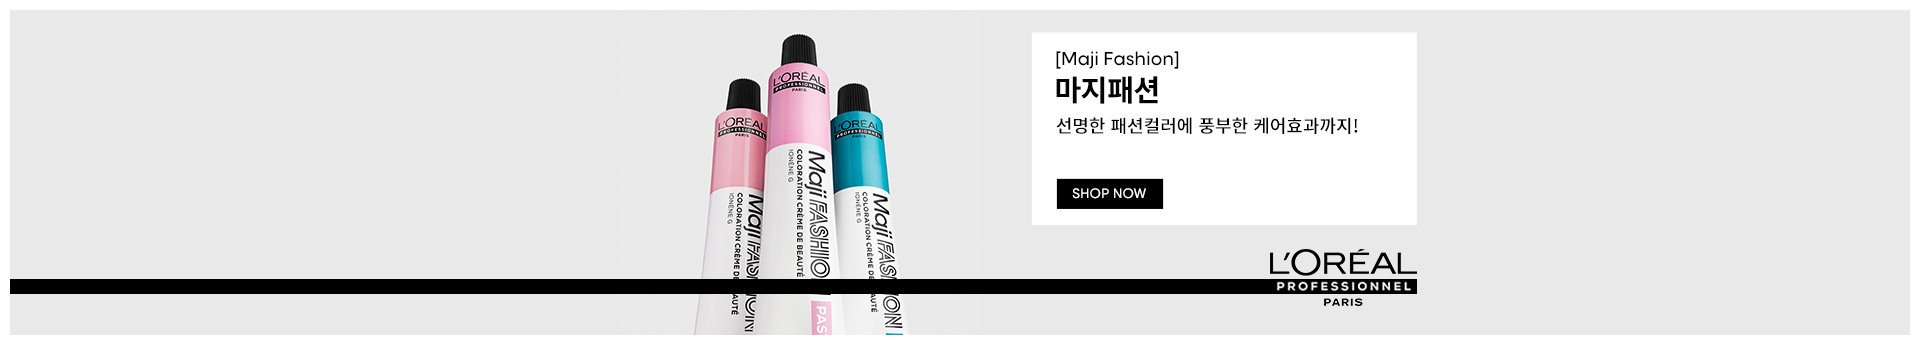 Homepage_banner-Maji_Fashion | L'Oréal 파트너샵